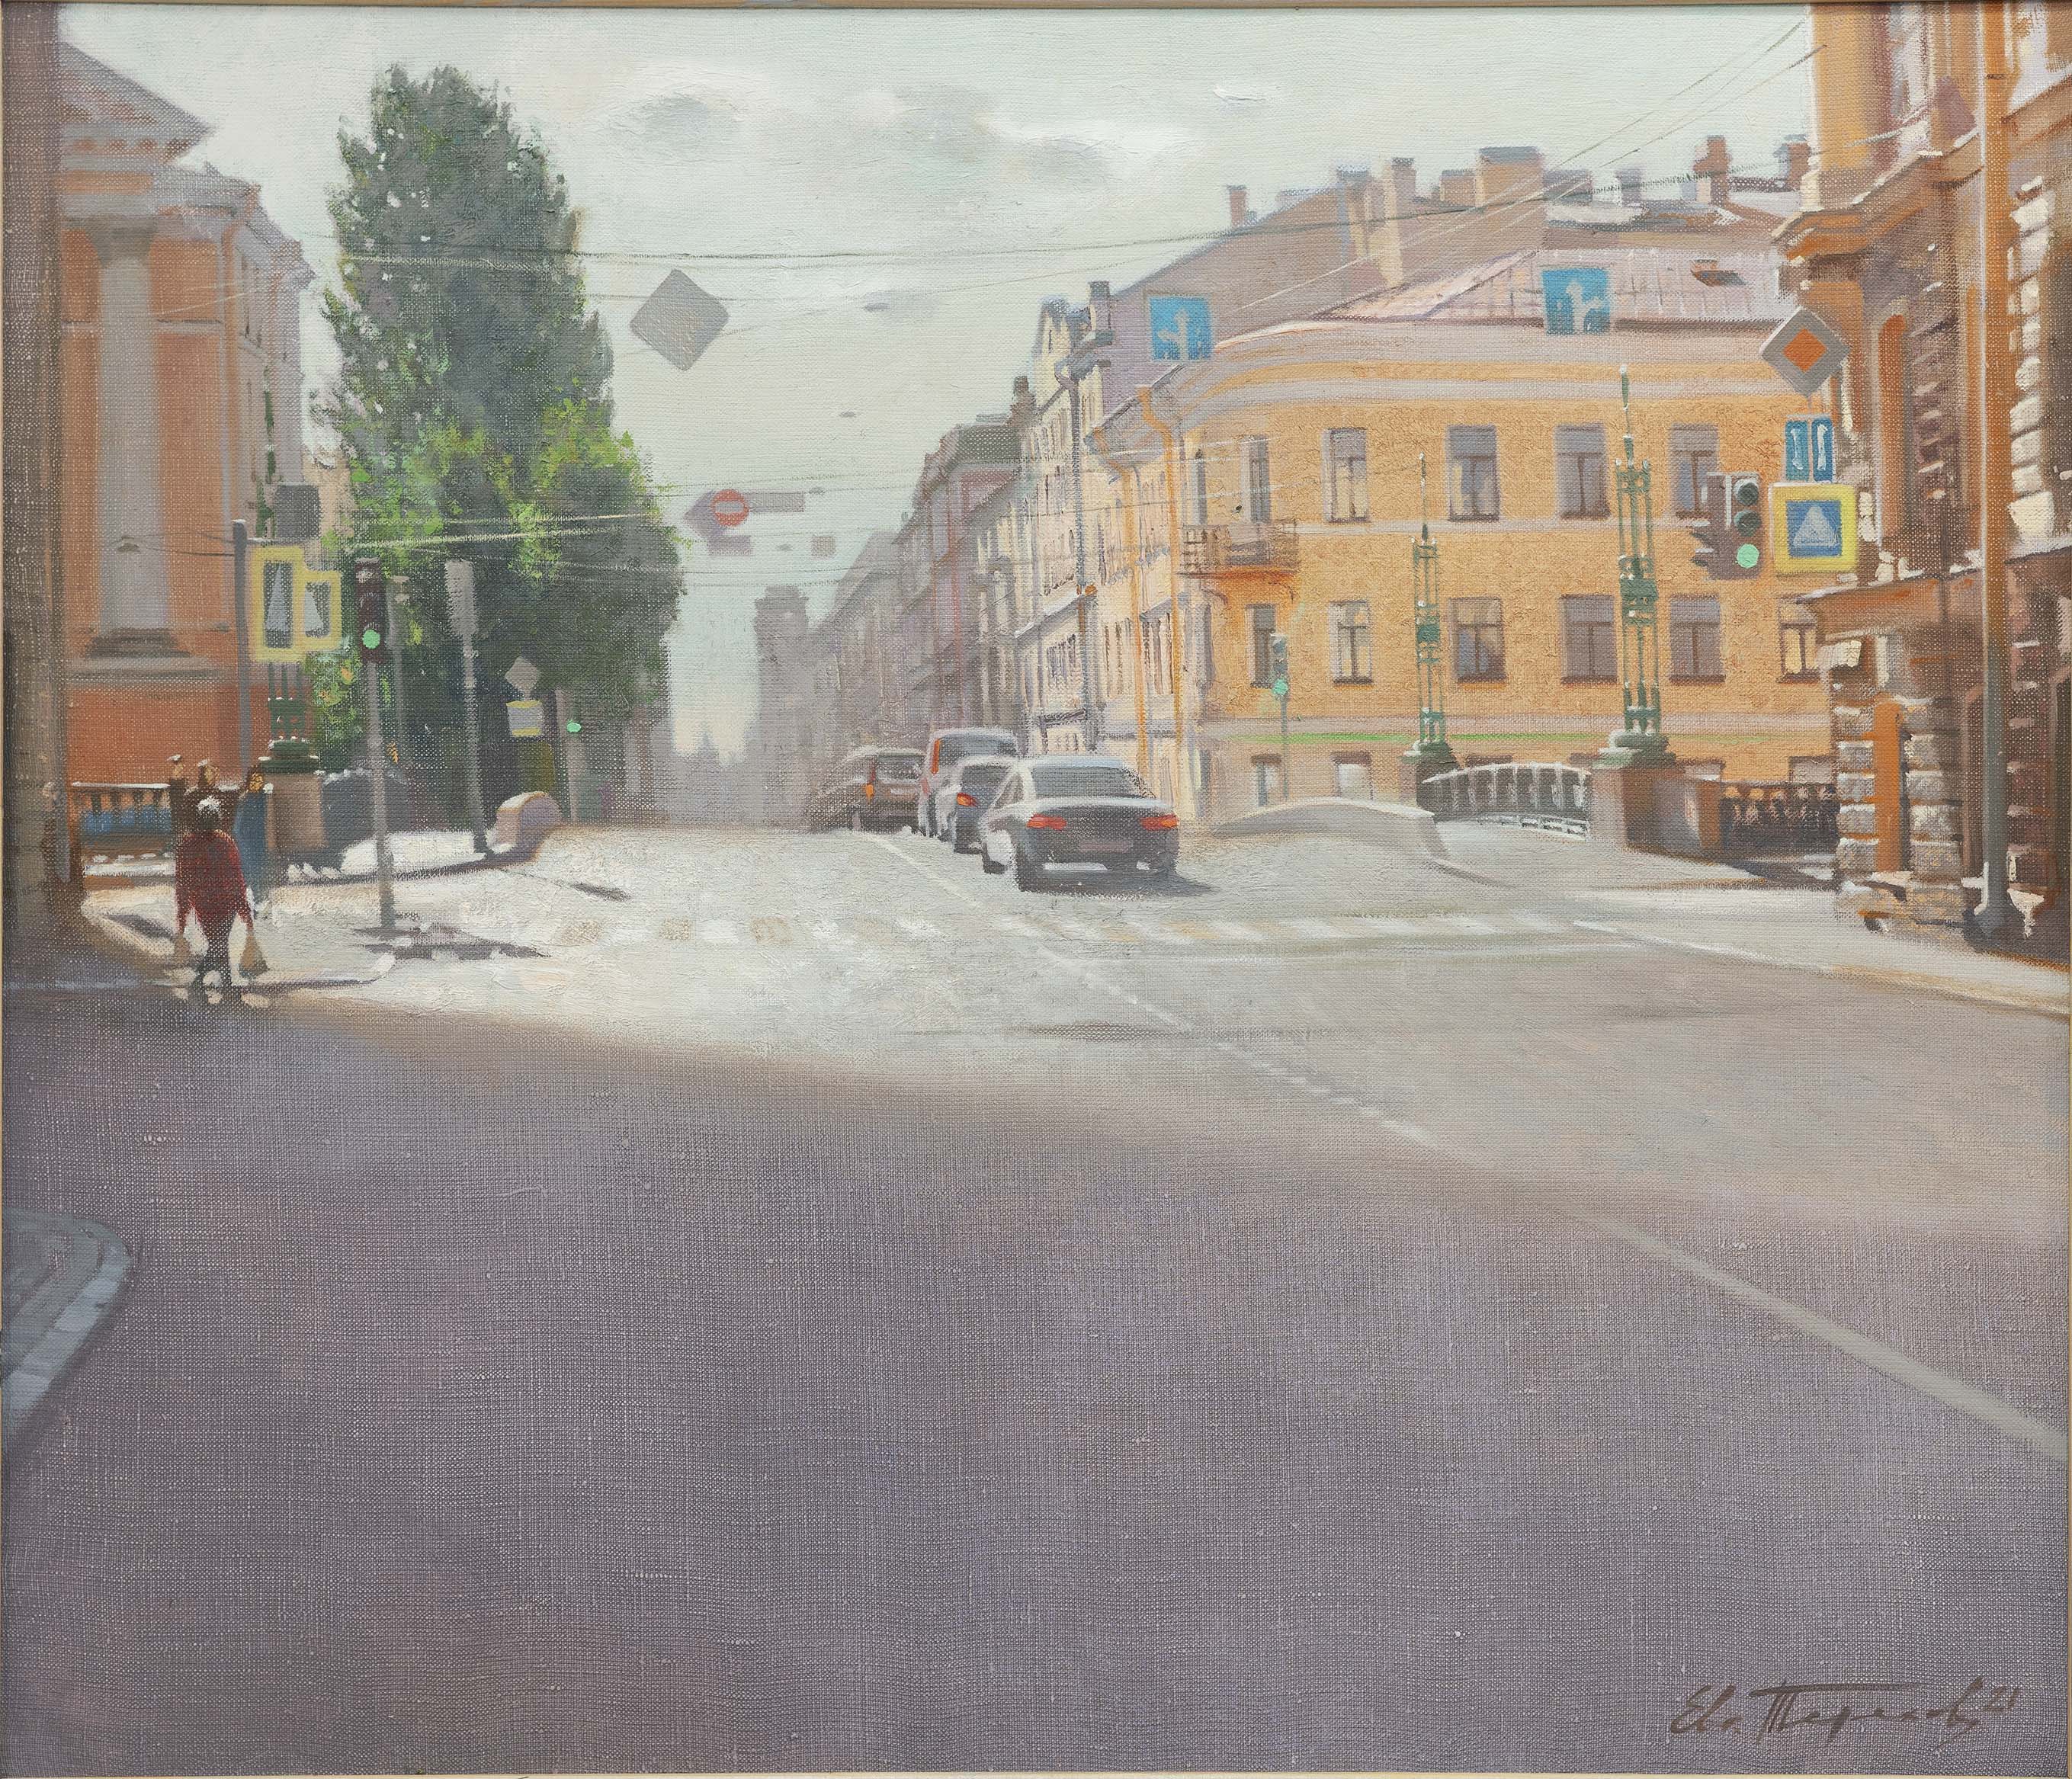 Voznesensky Prospect - 1, Eugene Terekhov, Buy the painting Oil